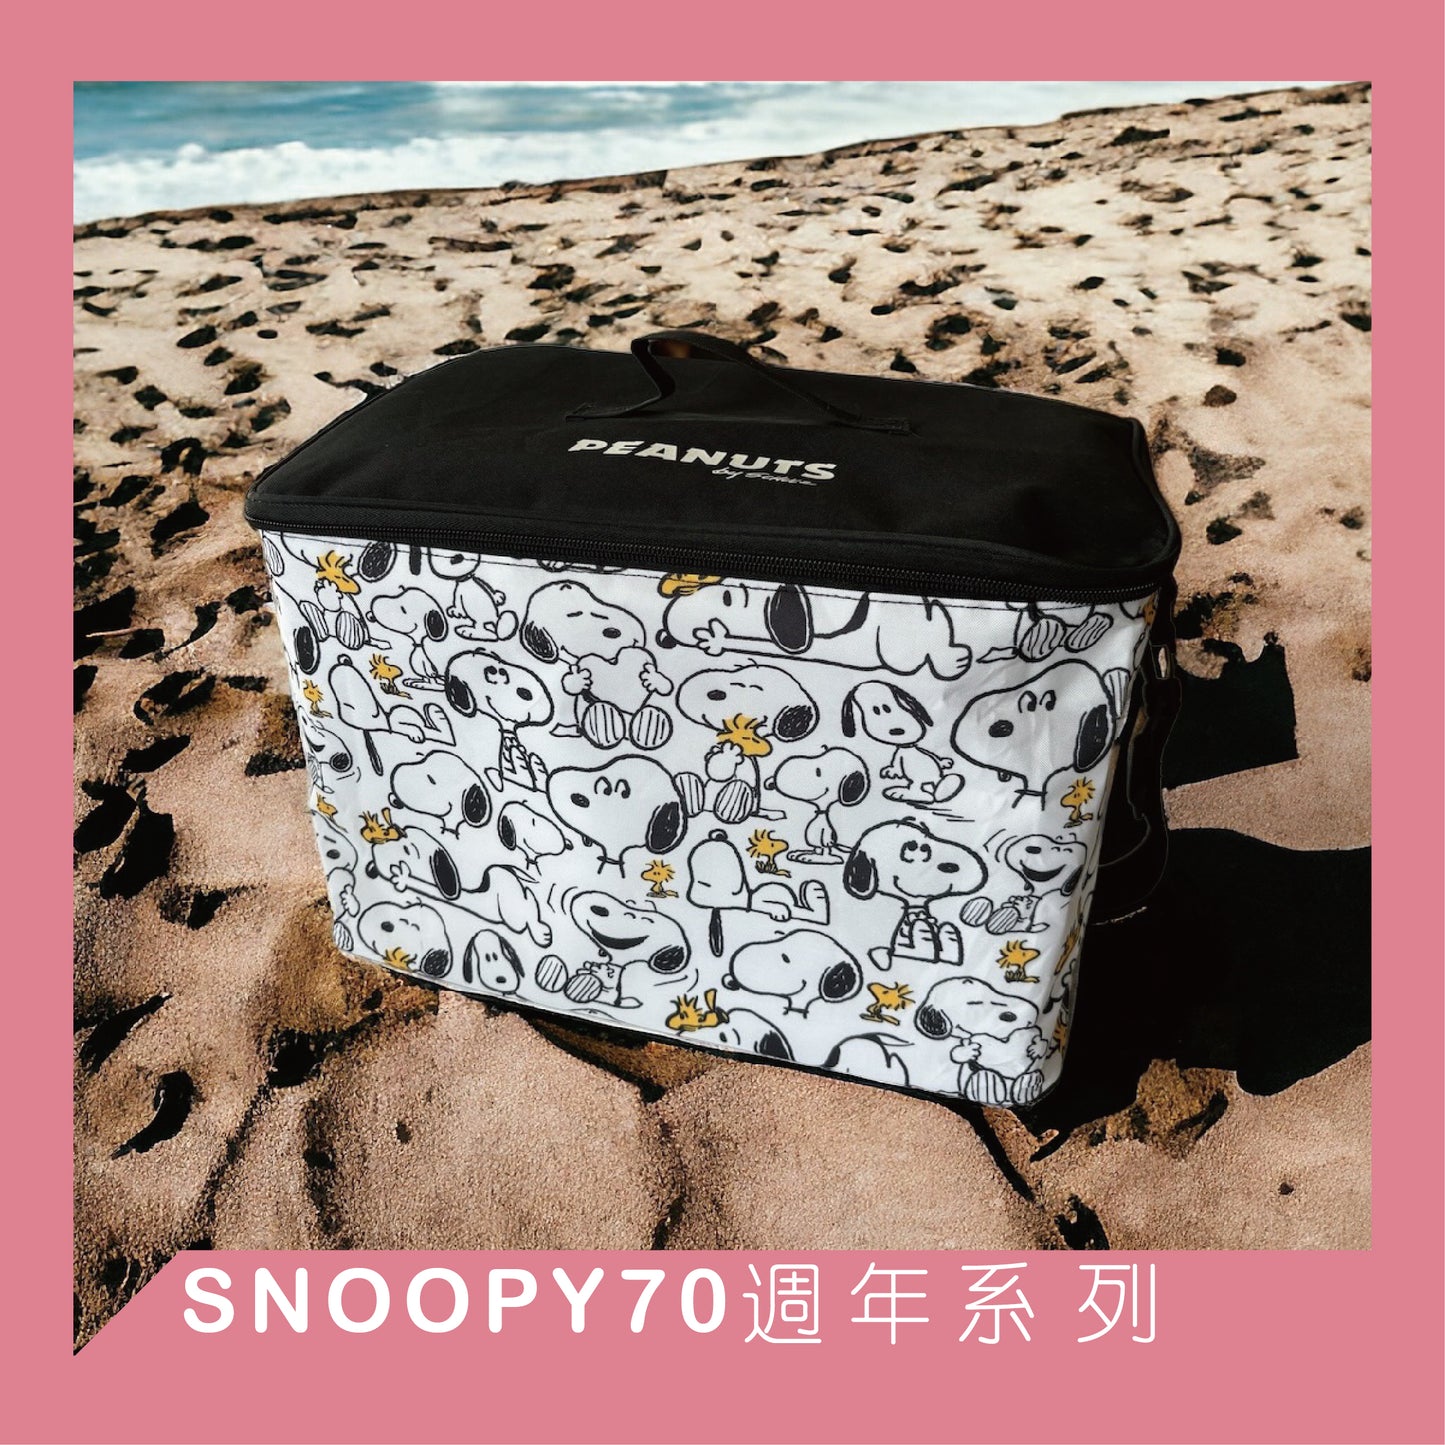 【現貨】【Snoopy 70週年大容量背提兩用保冷袋】